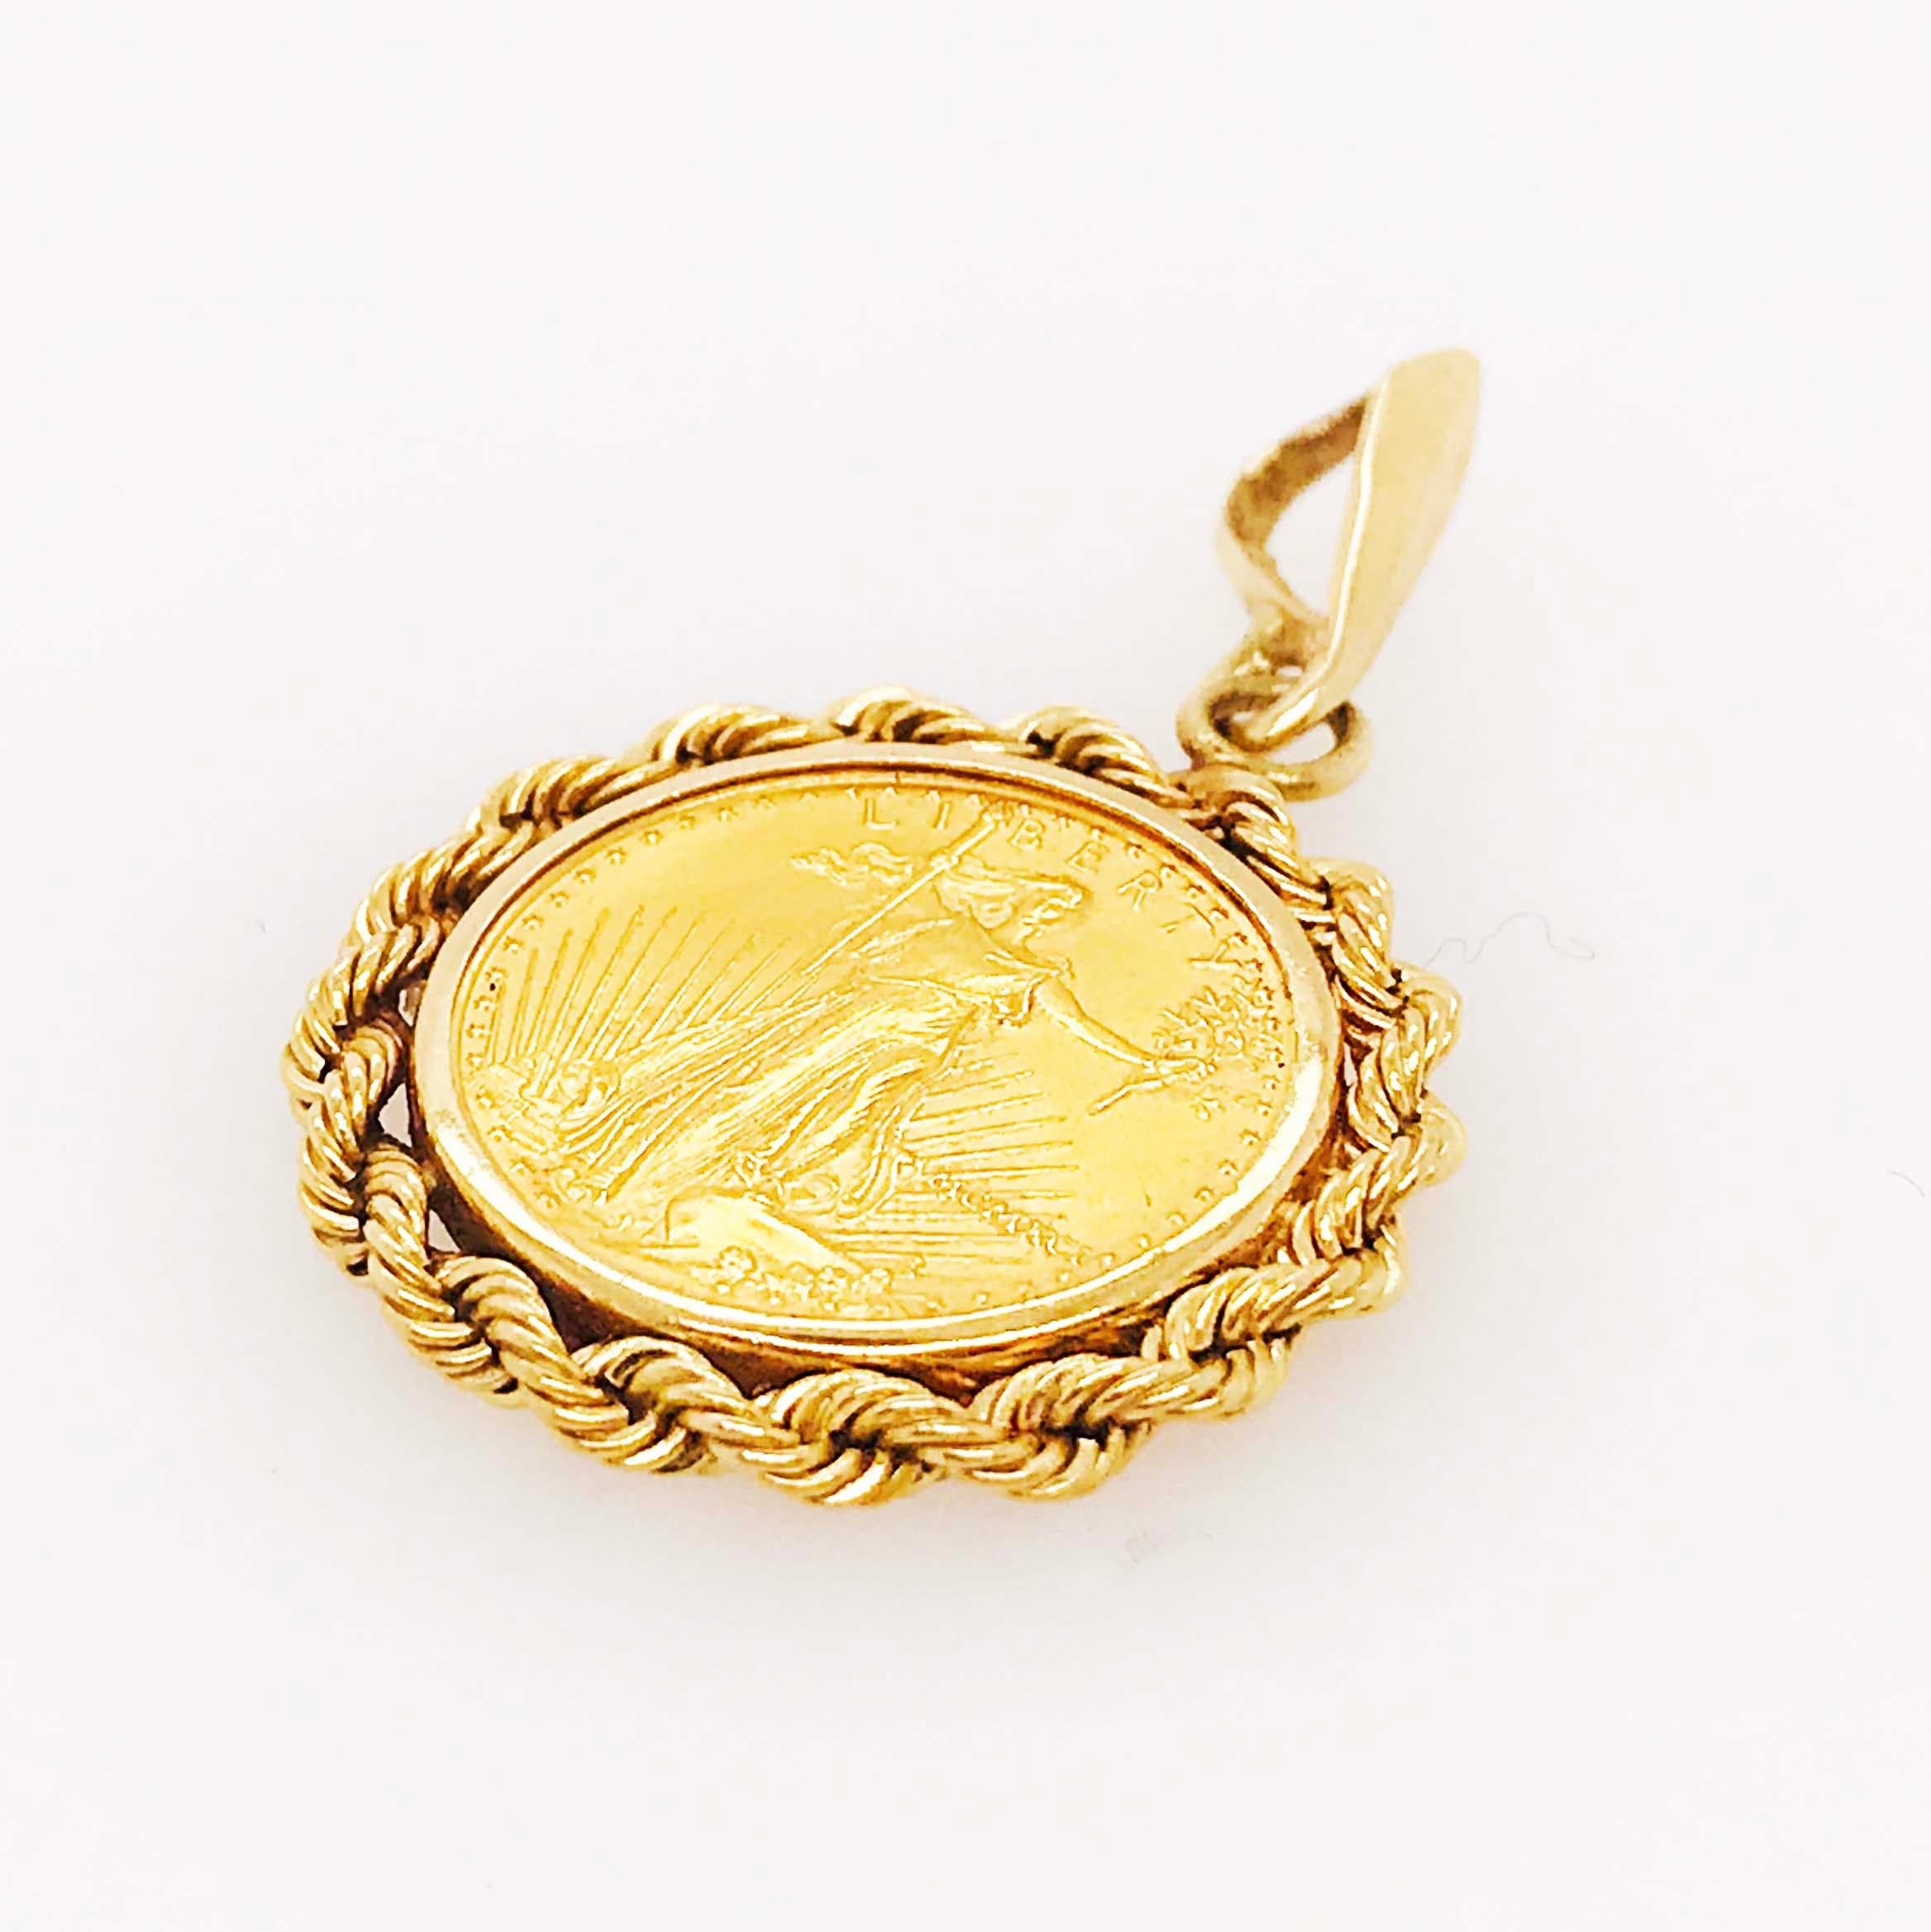 1/10 oz gold coin pendant